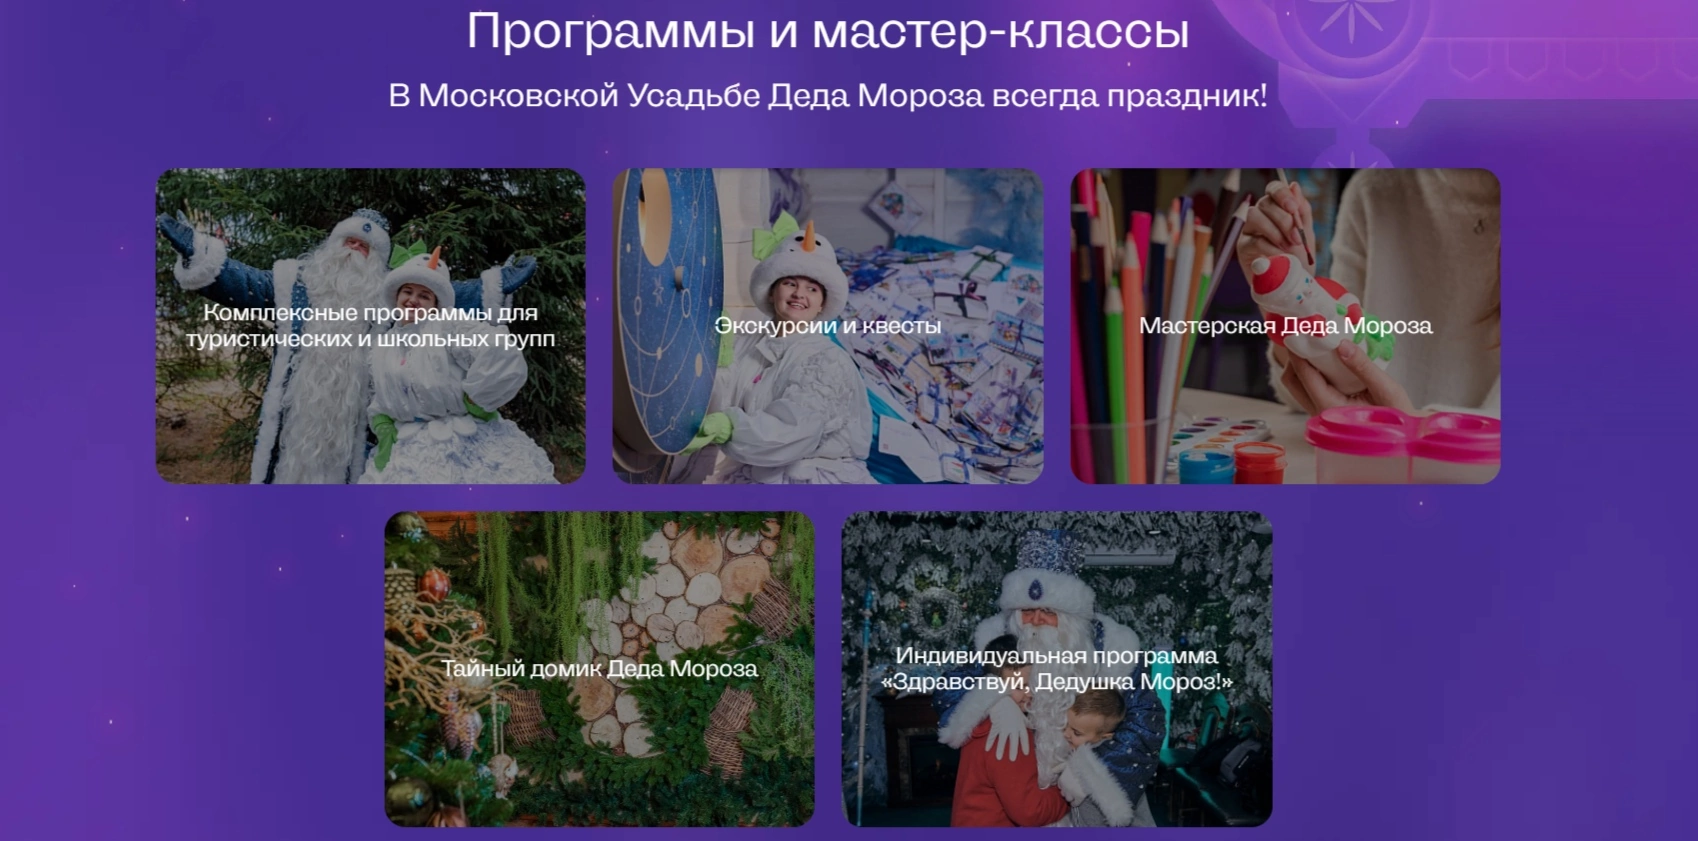 программа и мастер-классы в московской усадьбе деда мороза